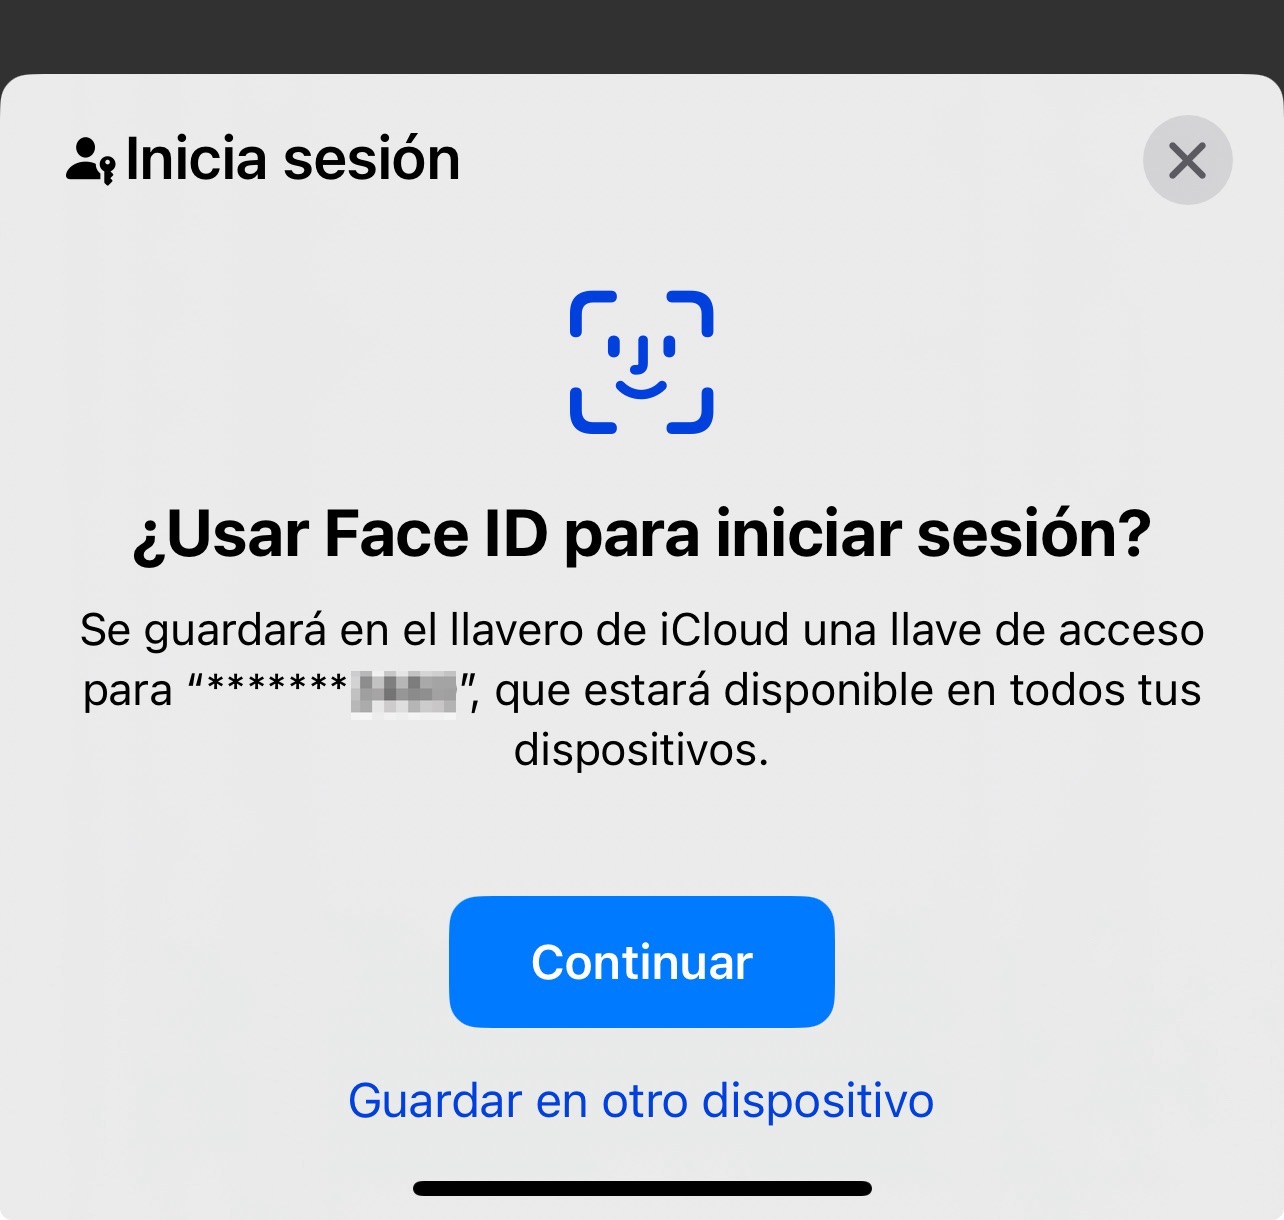 Passkeys en iOS, llamado Claves de acceso en español